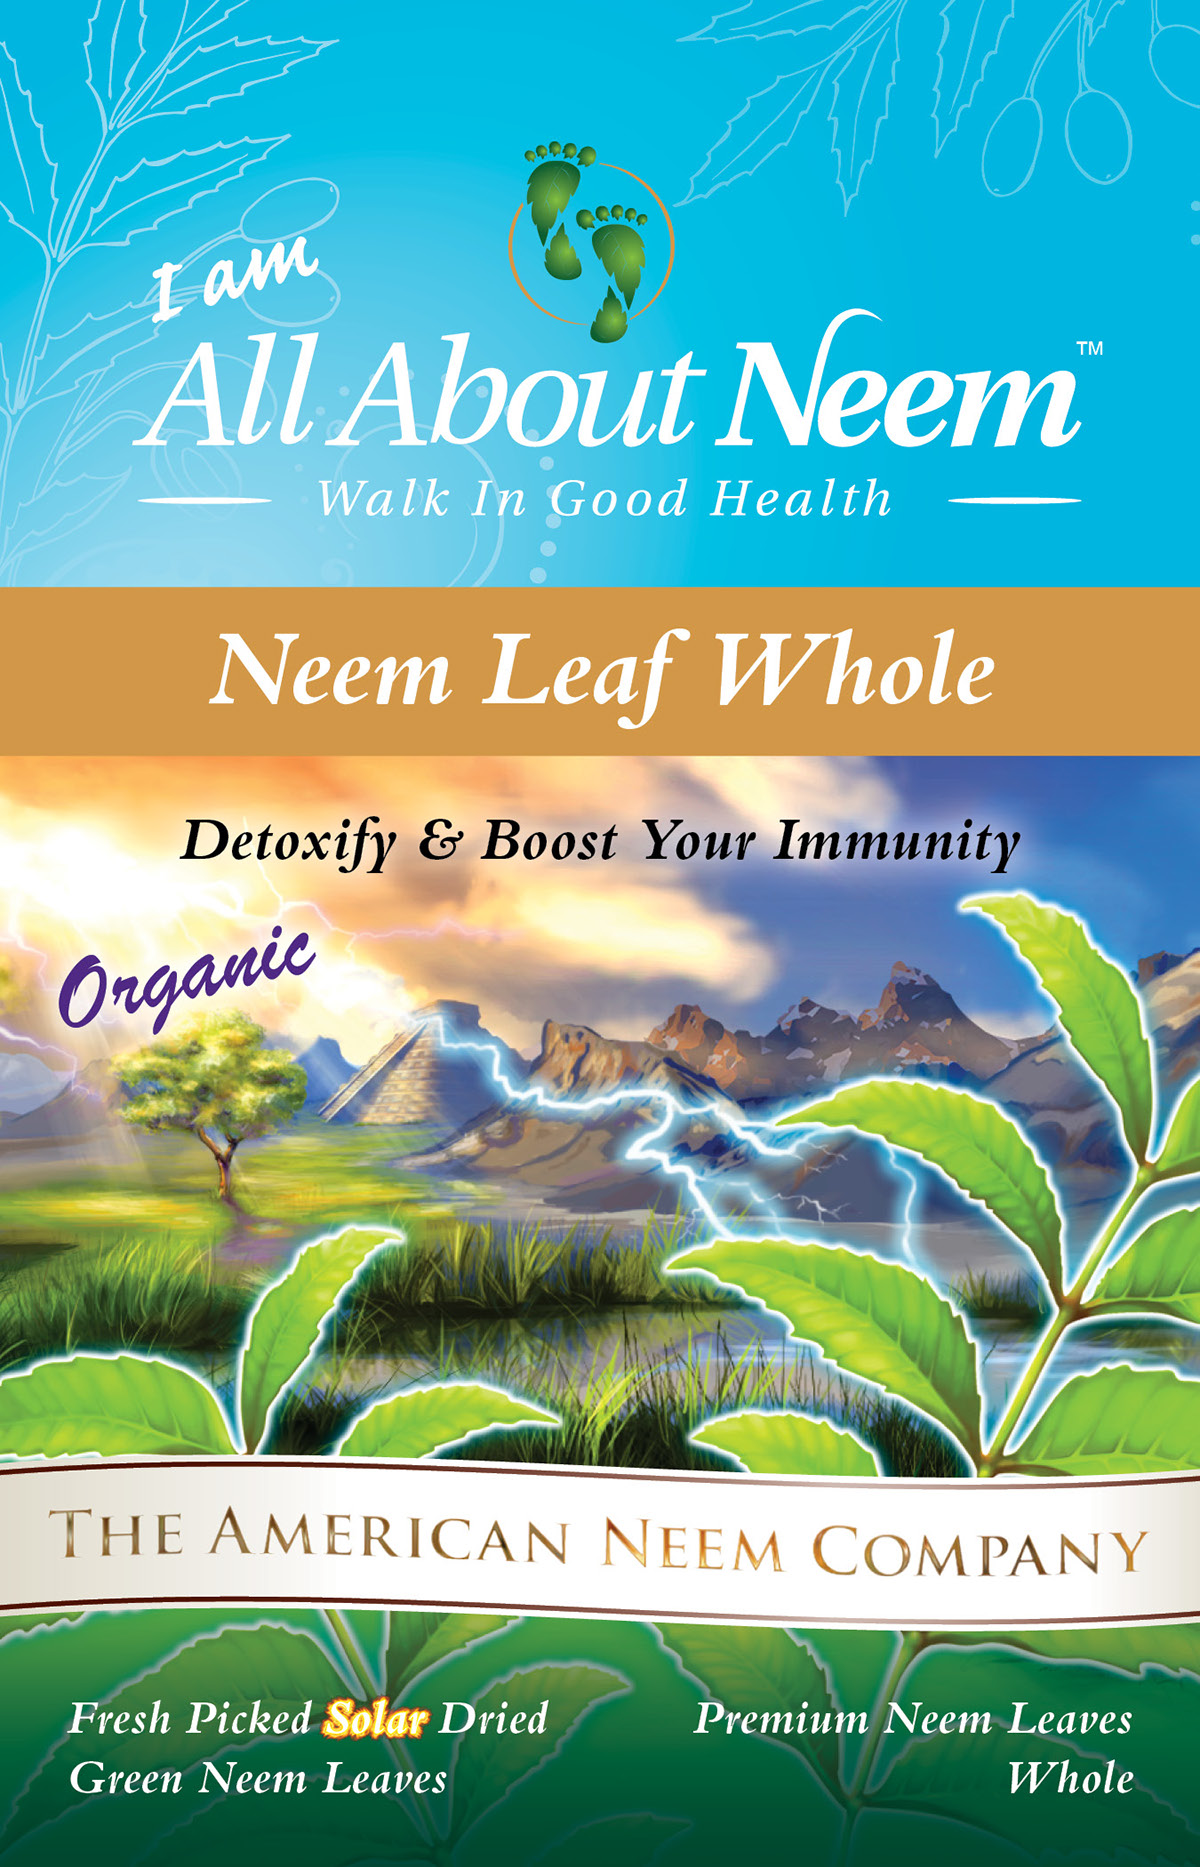 Adobe Portfolio neem moringa tea leaves Neem leaves all about neem